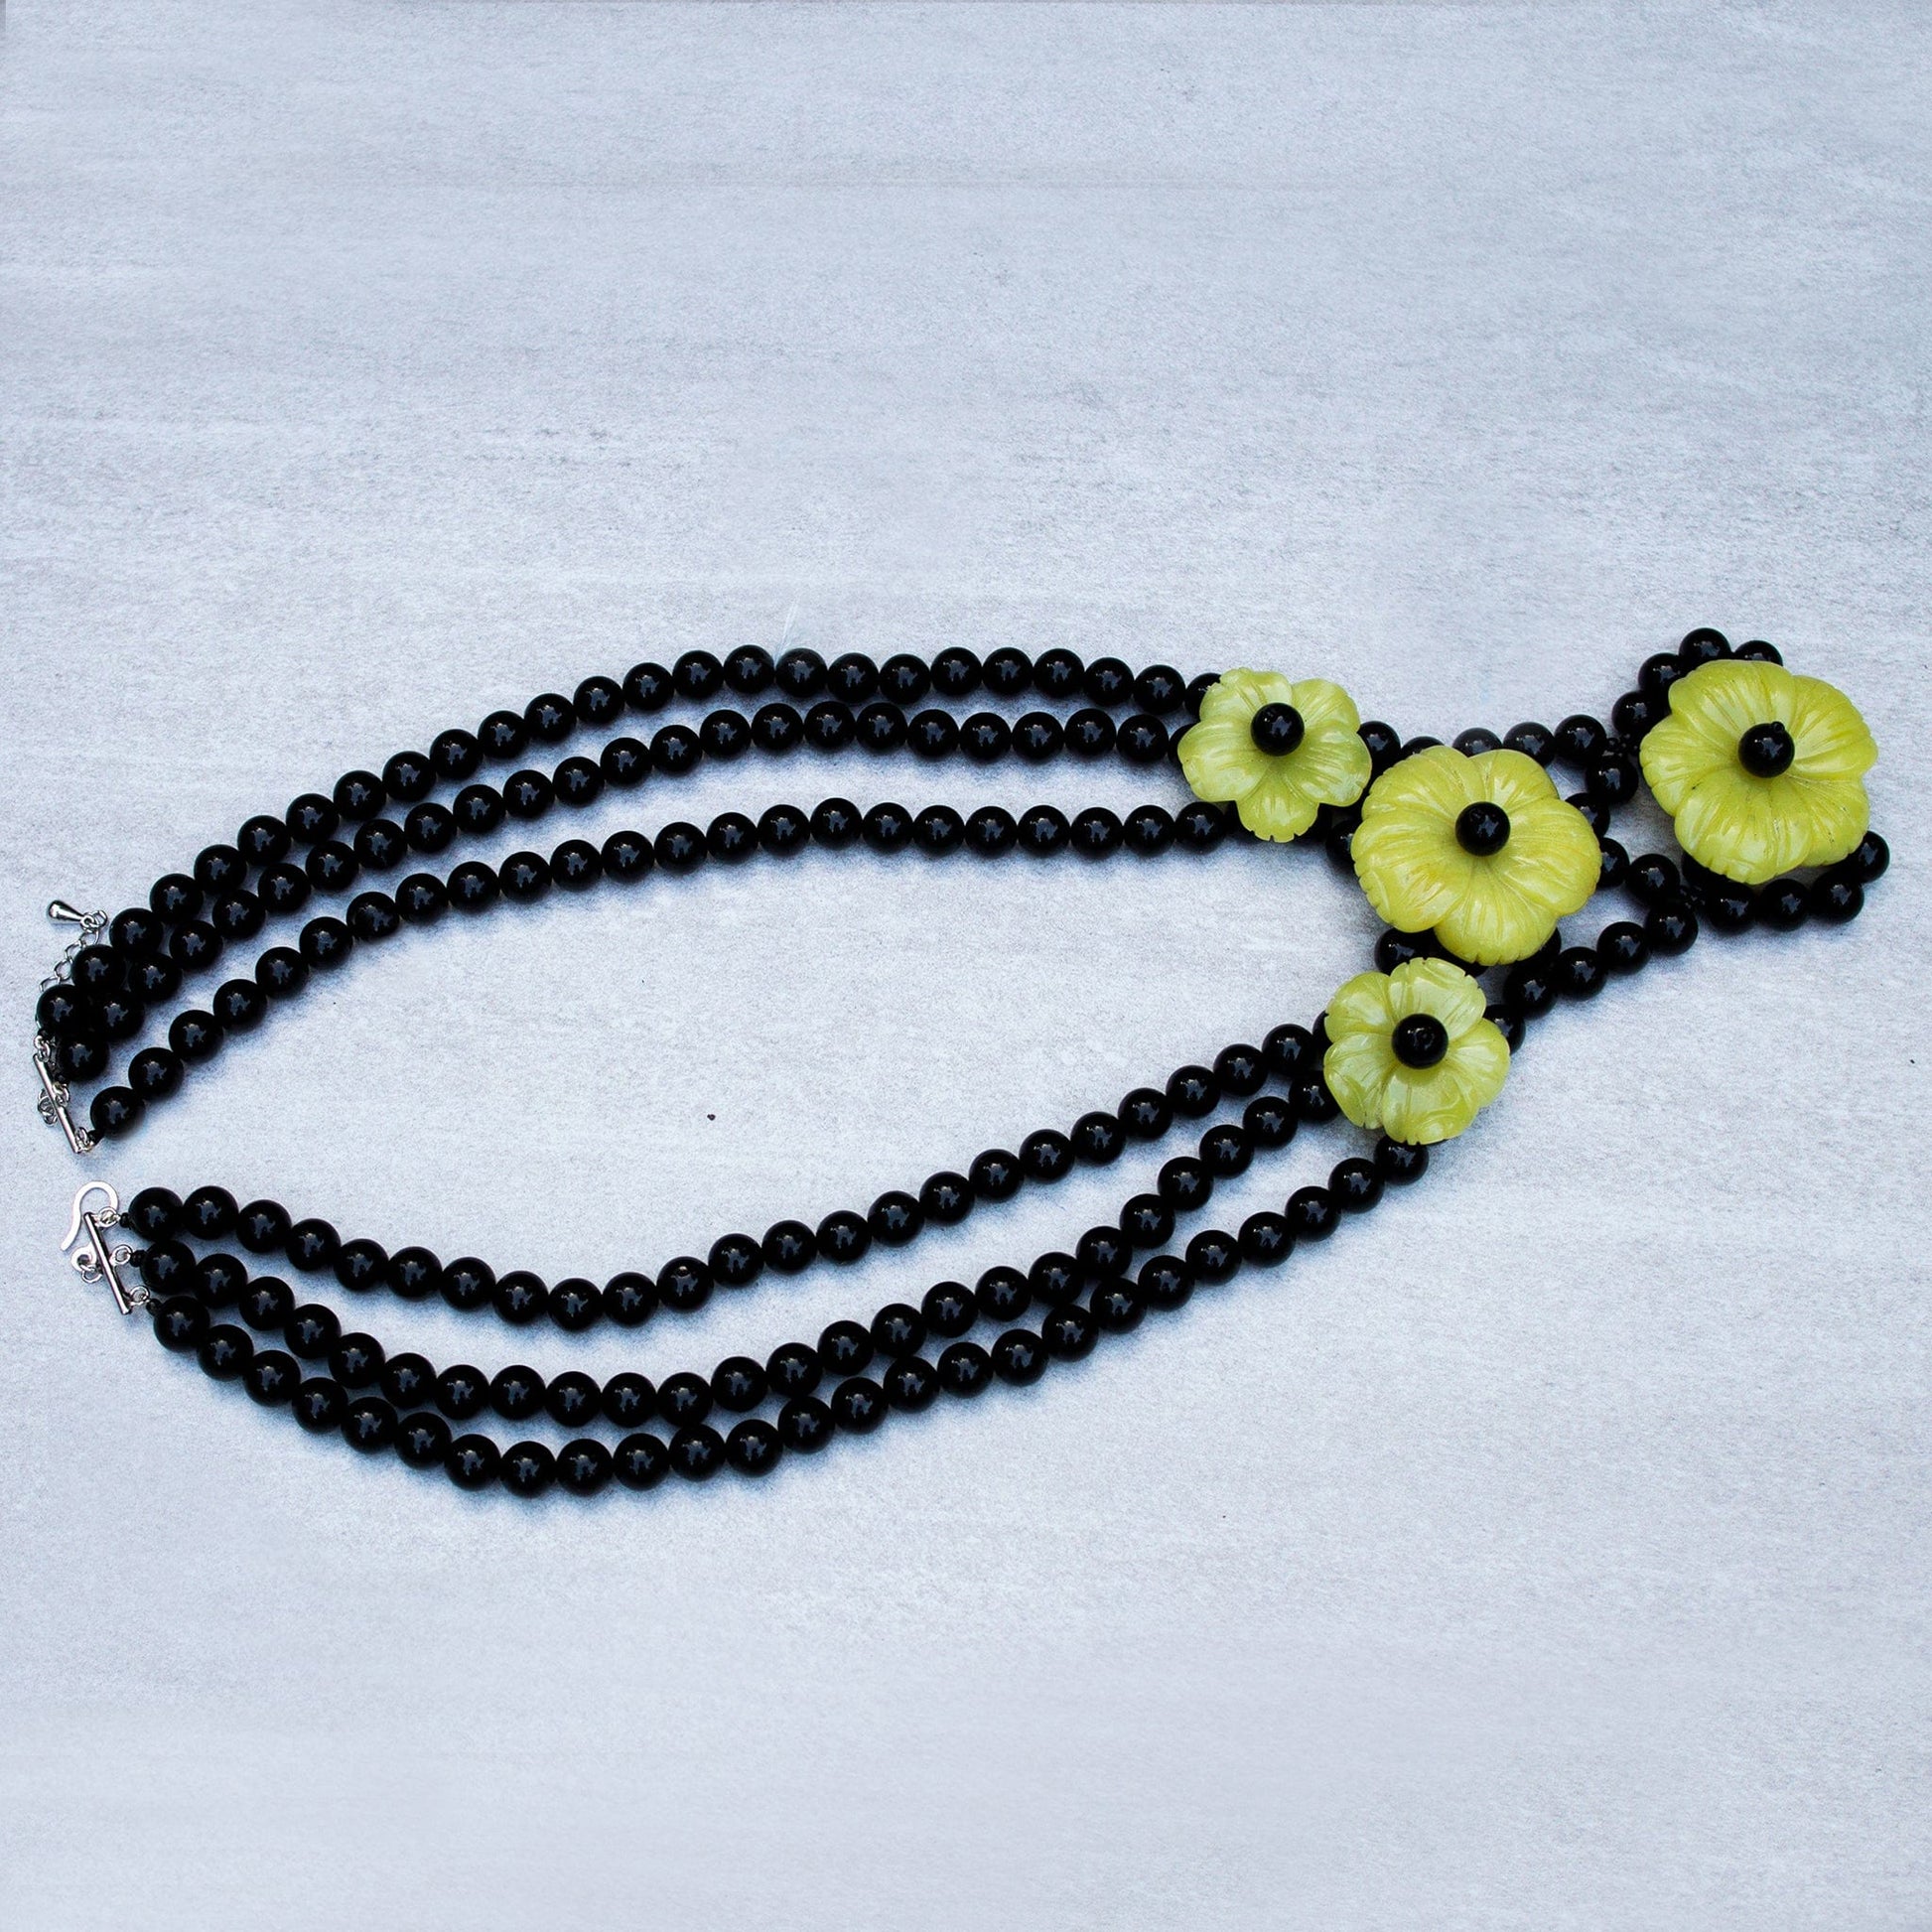 Onyx Flower Necklace Jewelry